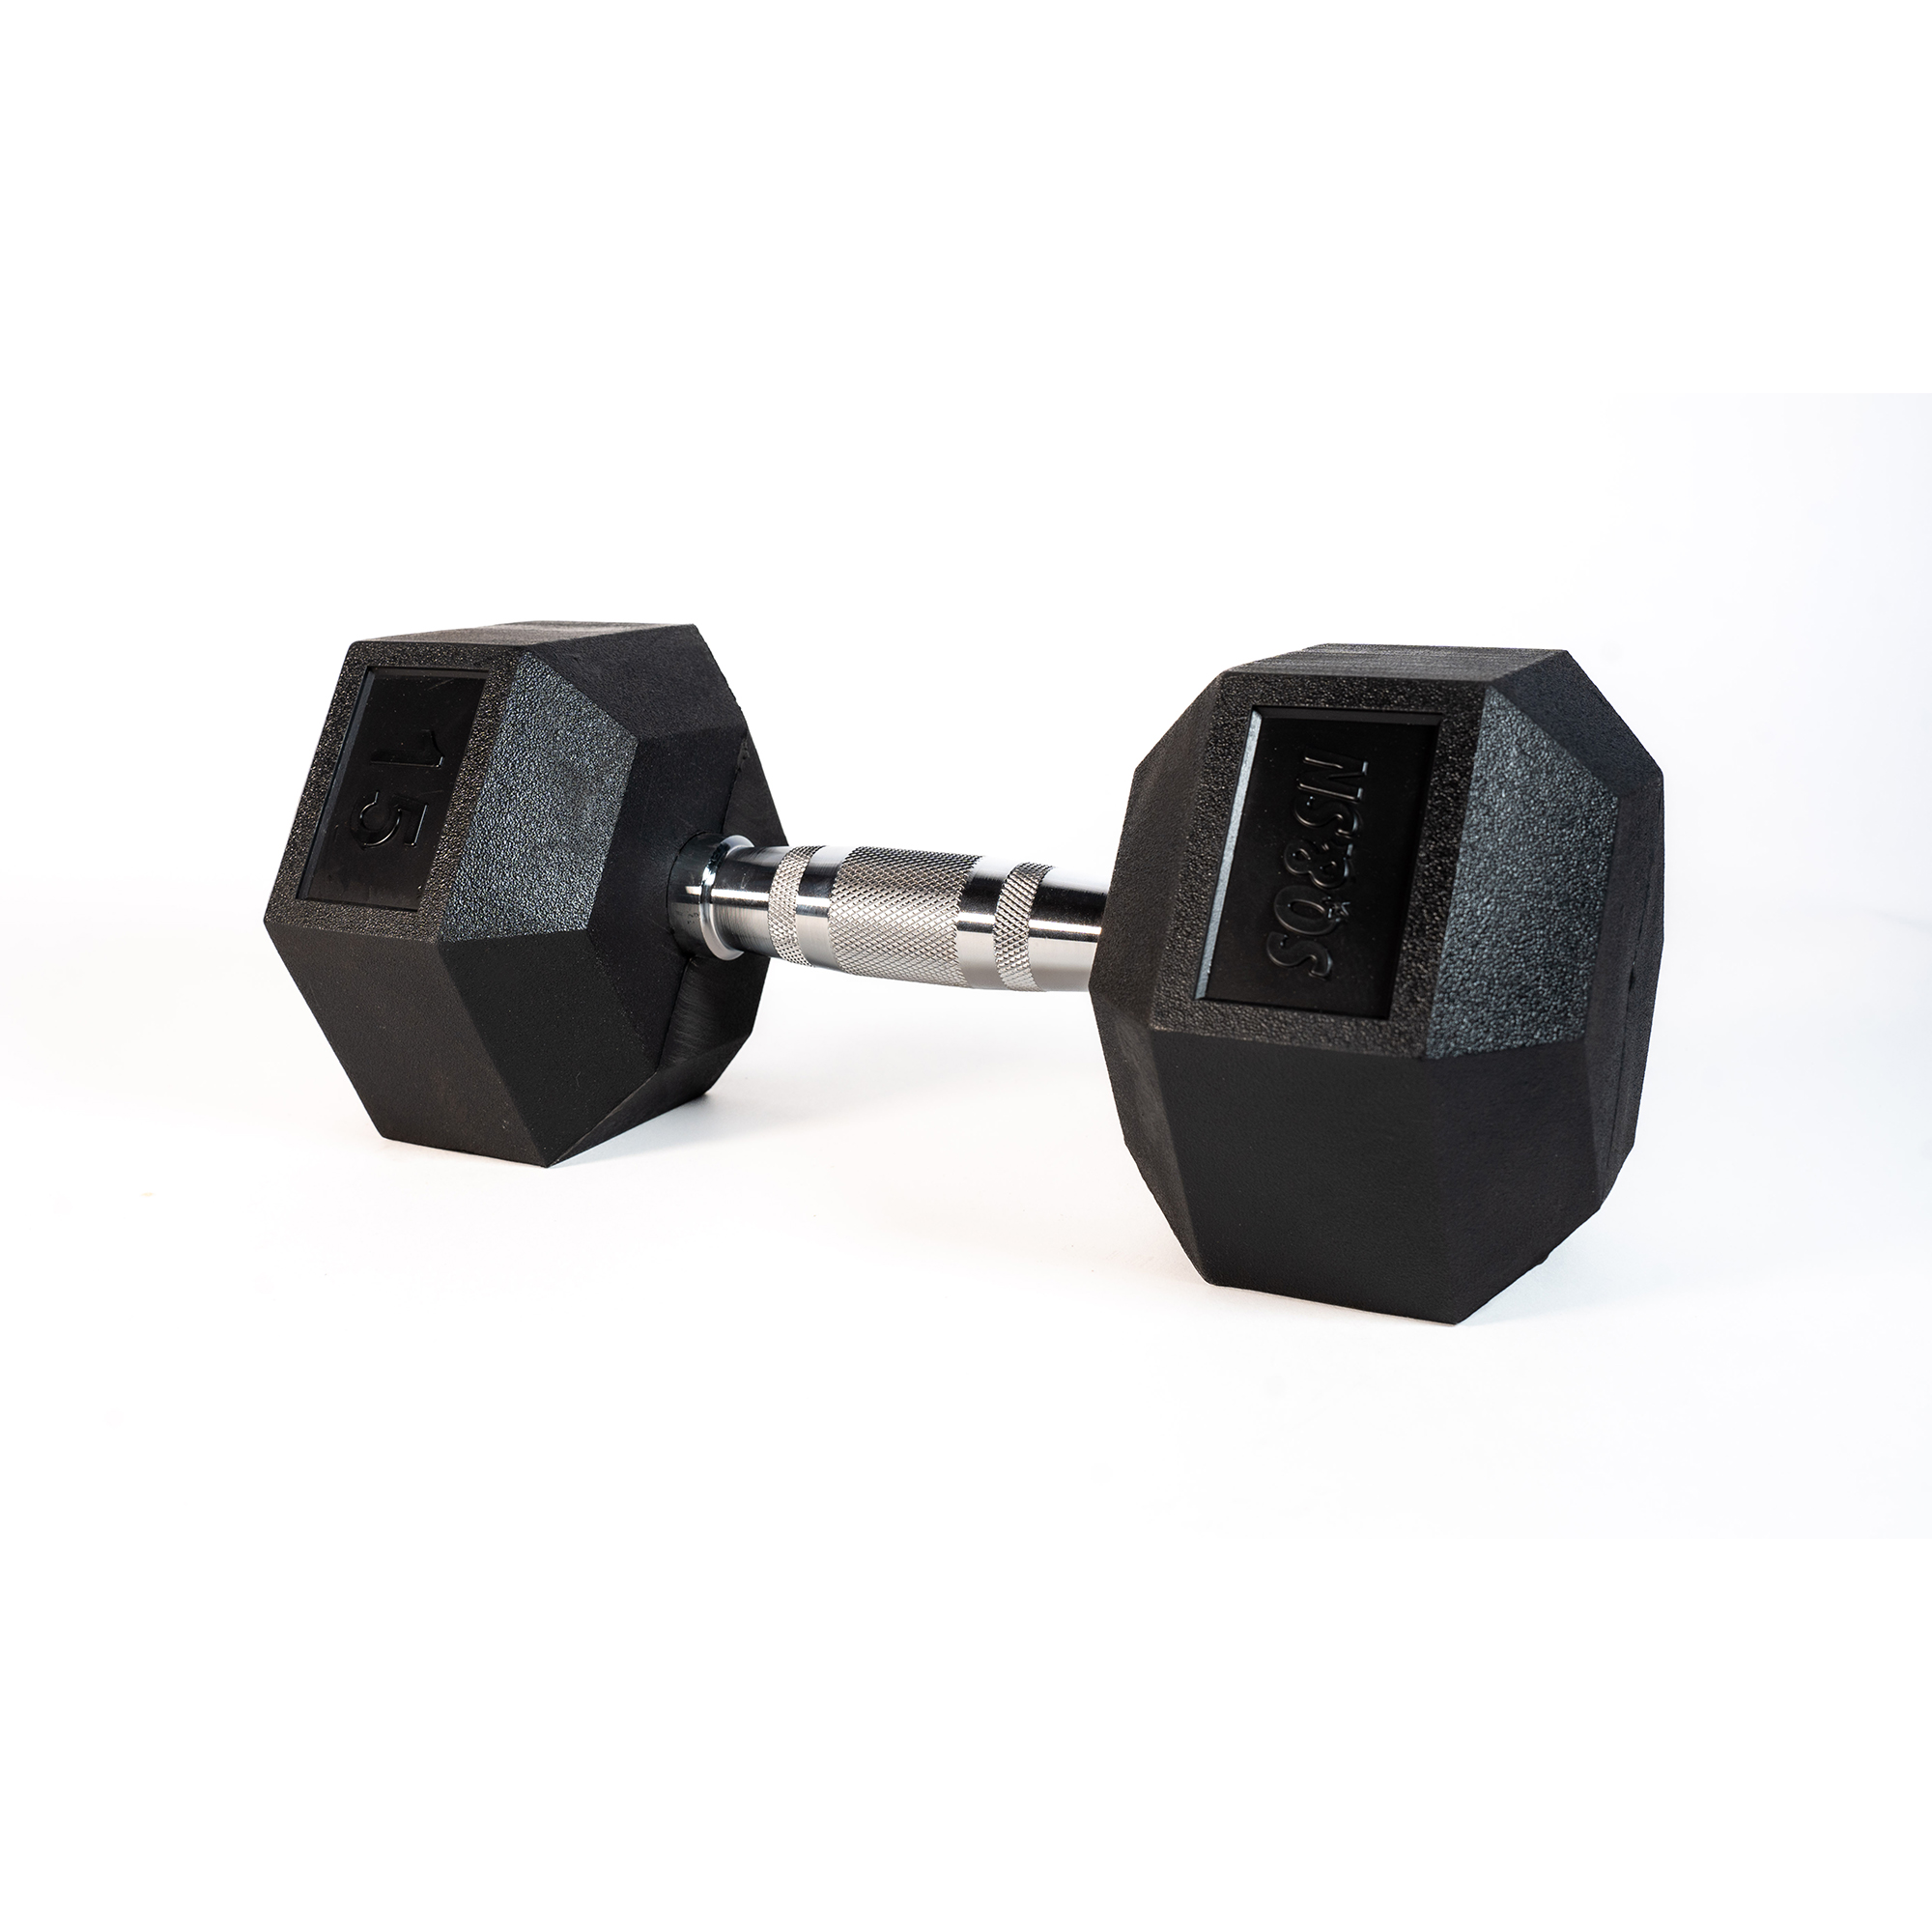 Brug SQ&SN Hexagon Håndvægt (15 kg) med forkromet greb. Udstyr til crossfit træning, styrketræning og funktionel træning til en forbedret oplevelse